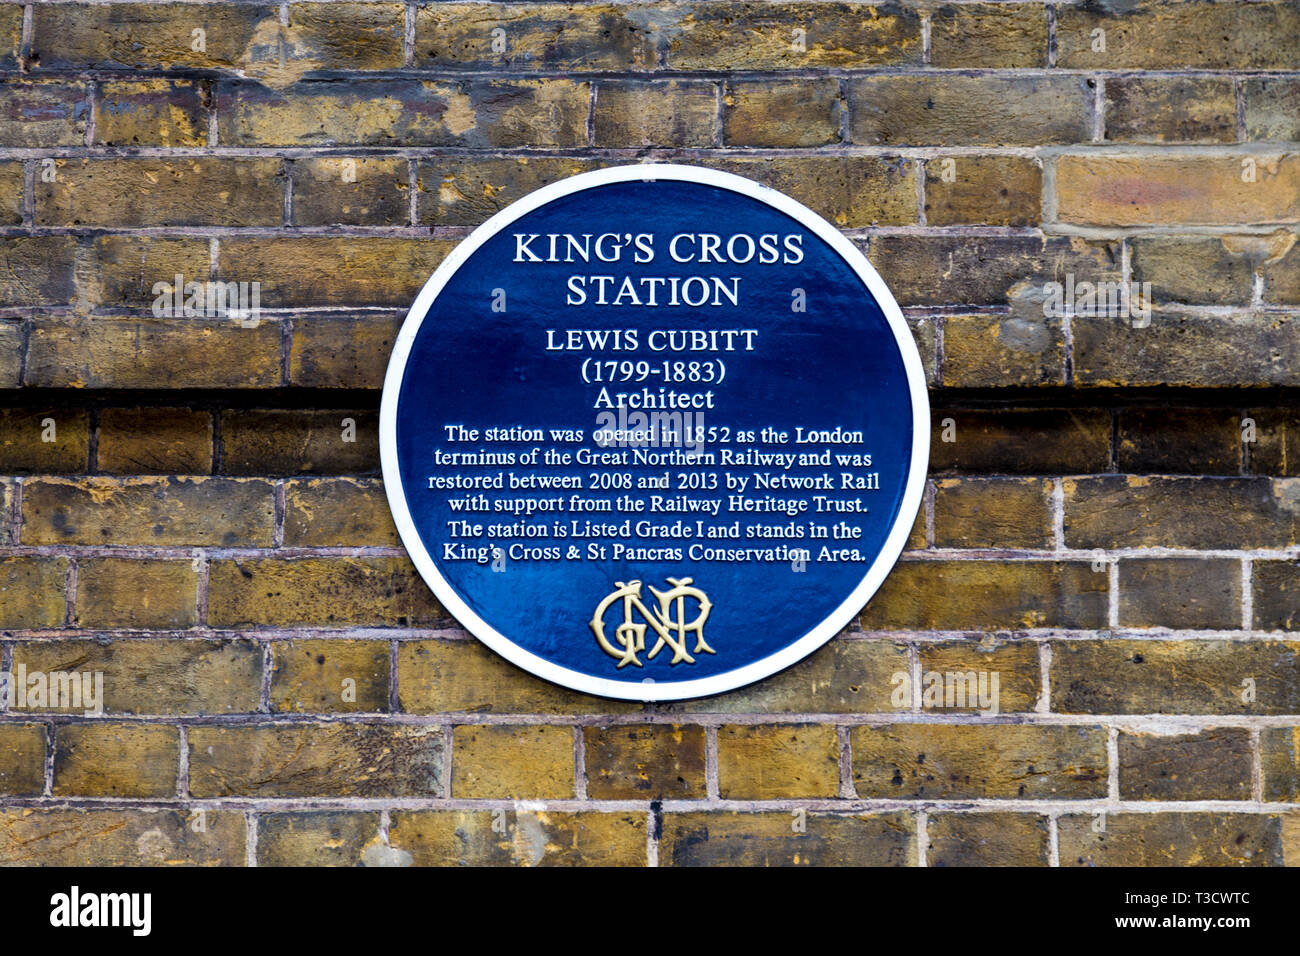 Blue plaque pour King's Cross Station architecte Lewis Cubitt, London, UK Banque D'Images